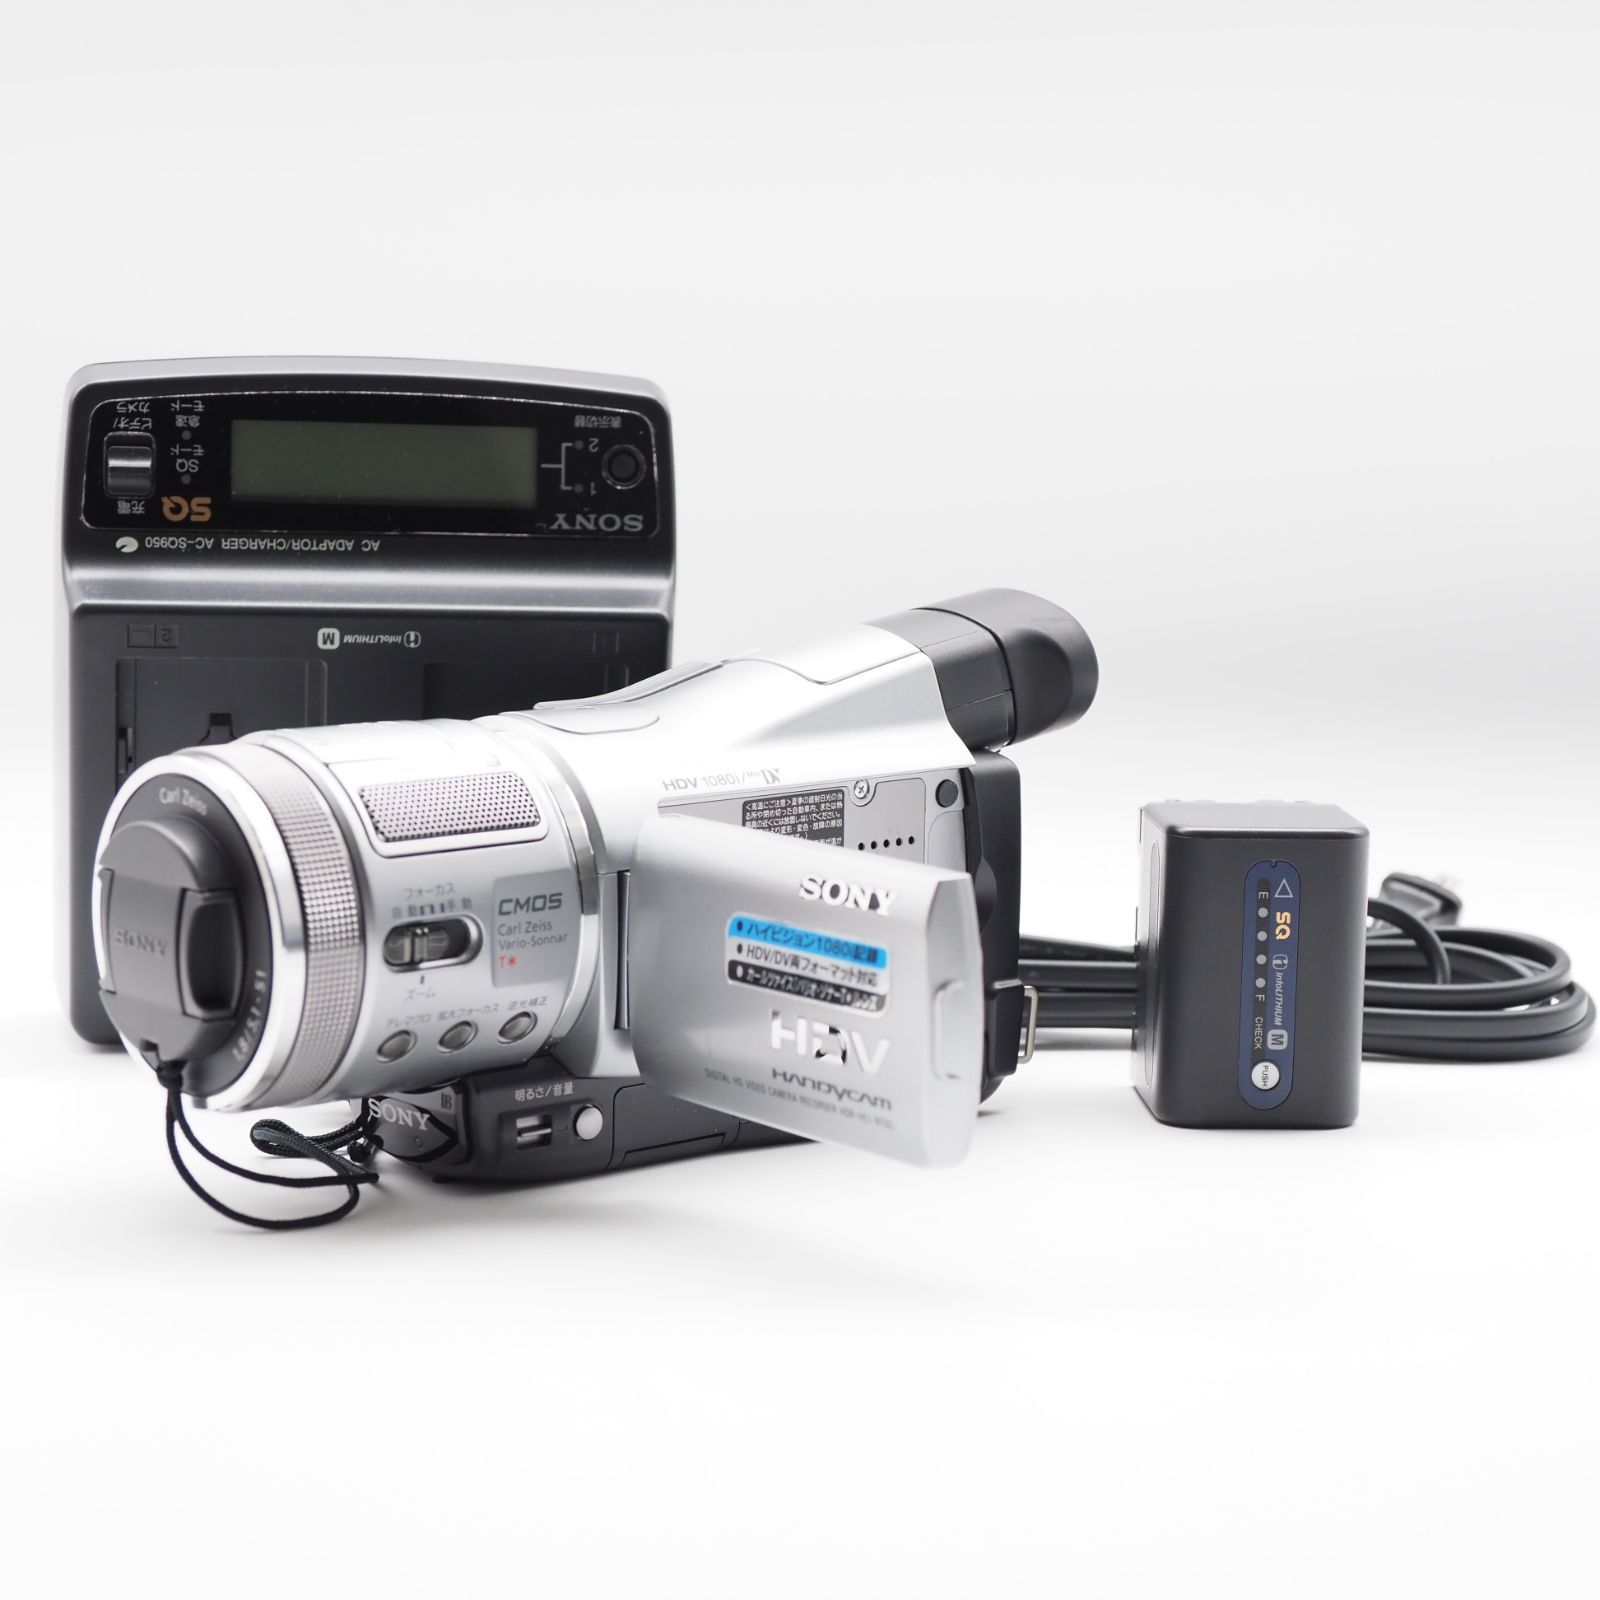 ソニー SONY デジタルHDビデオカメラレコーダー CX550V ブラック HDR-CX550V/B  :20220208100414-00706us:ダイコク屋999 - 通販 - Yahoo!ショッピング - カメラ